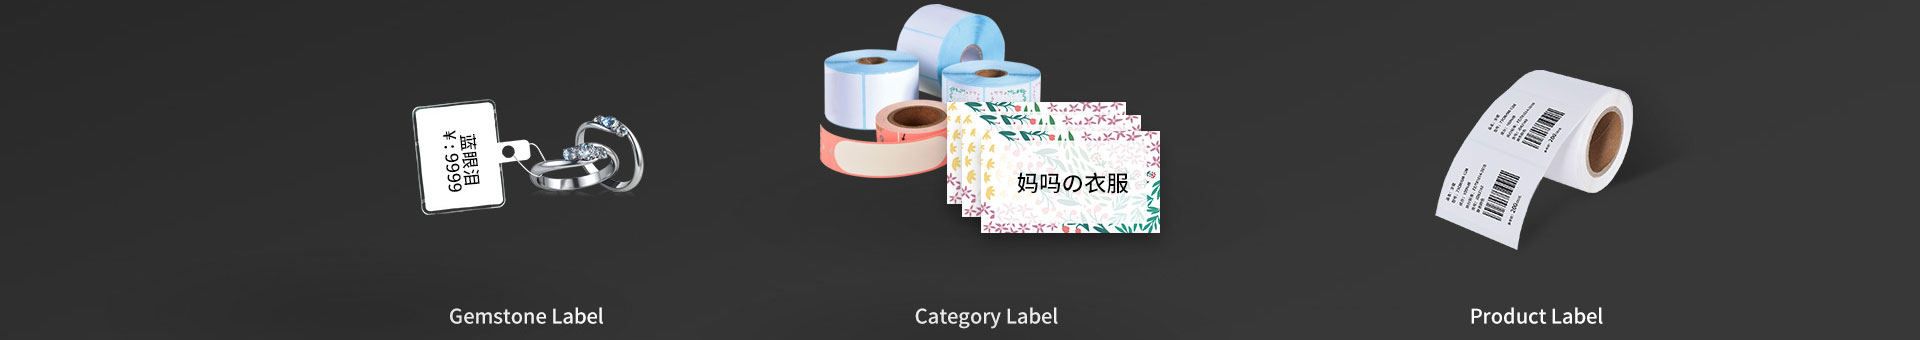 custom goods label maker